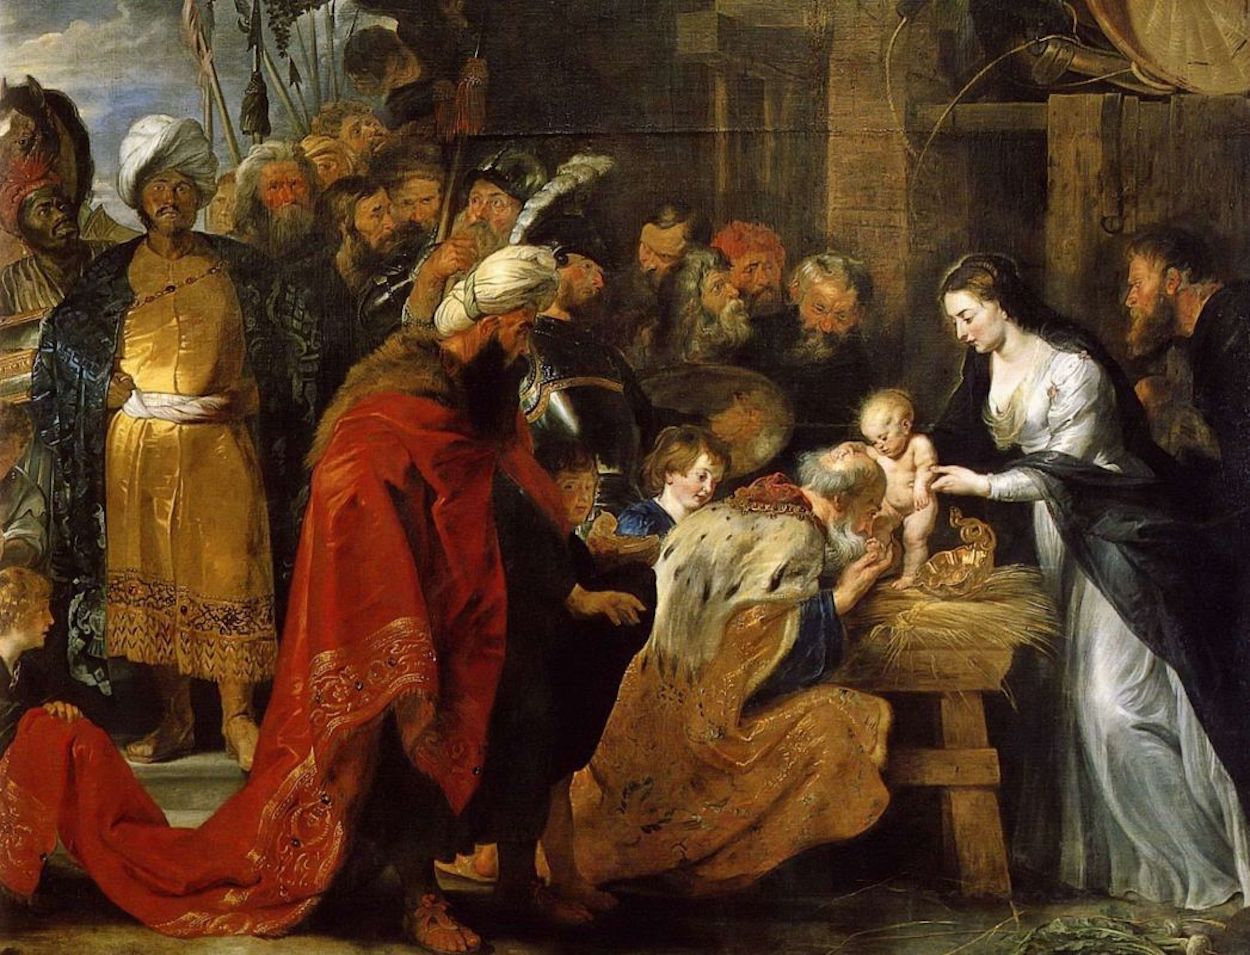 La Adoración de los Reyes Magos by Peter Paul Rubens - 1616-1617 Musée des beaux-arts de Lyon